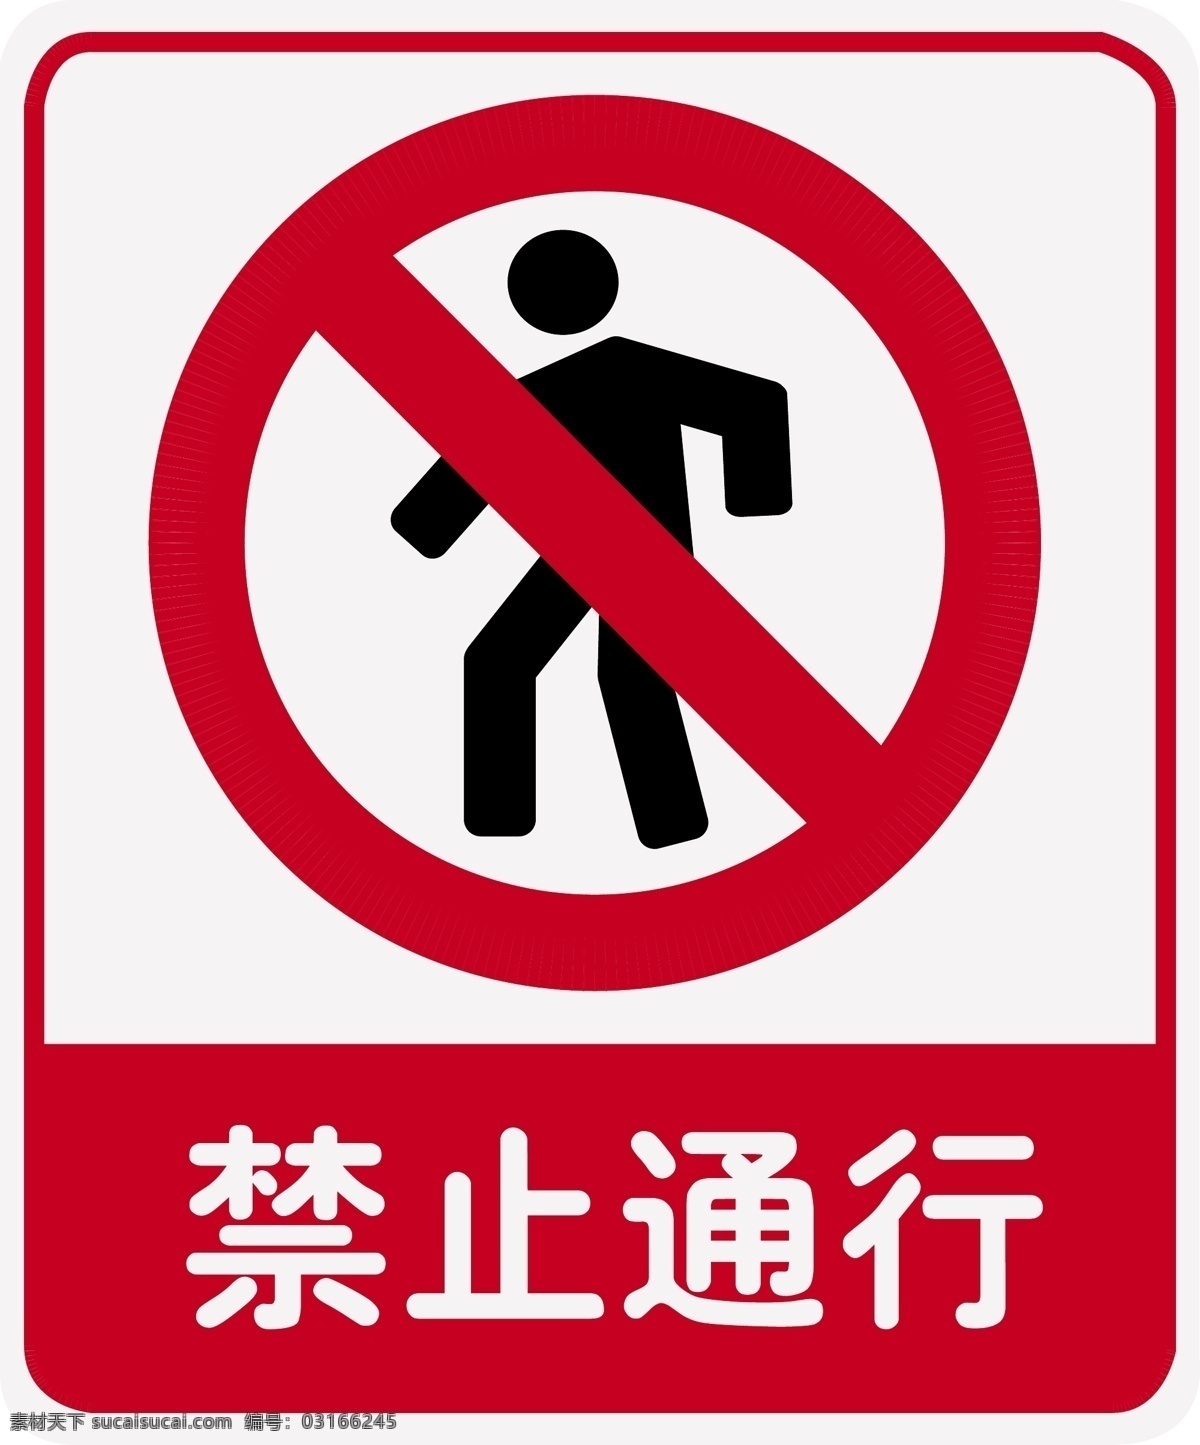 禁止通行 安全警示牌 安全 警示 标示牌 安全警示 标识 公共标识标志 标识标志图标 矢量